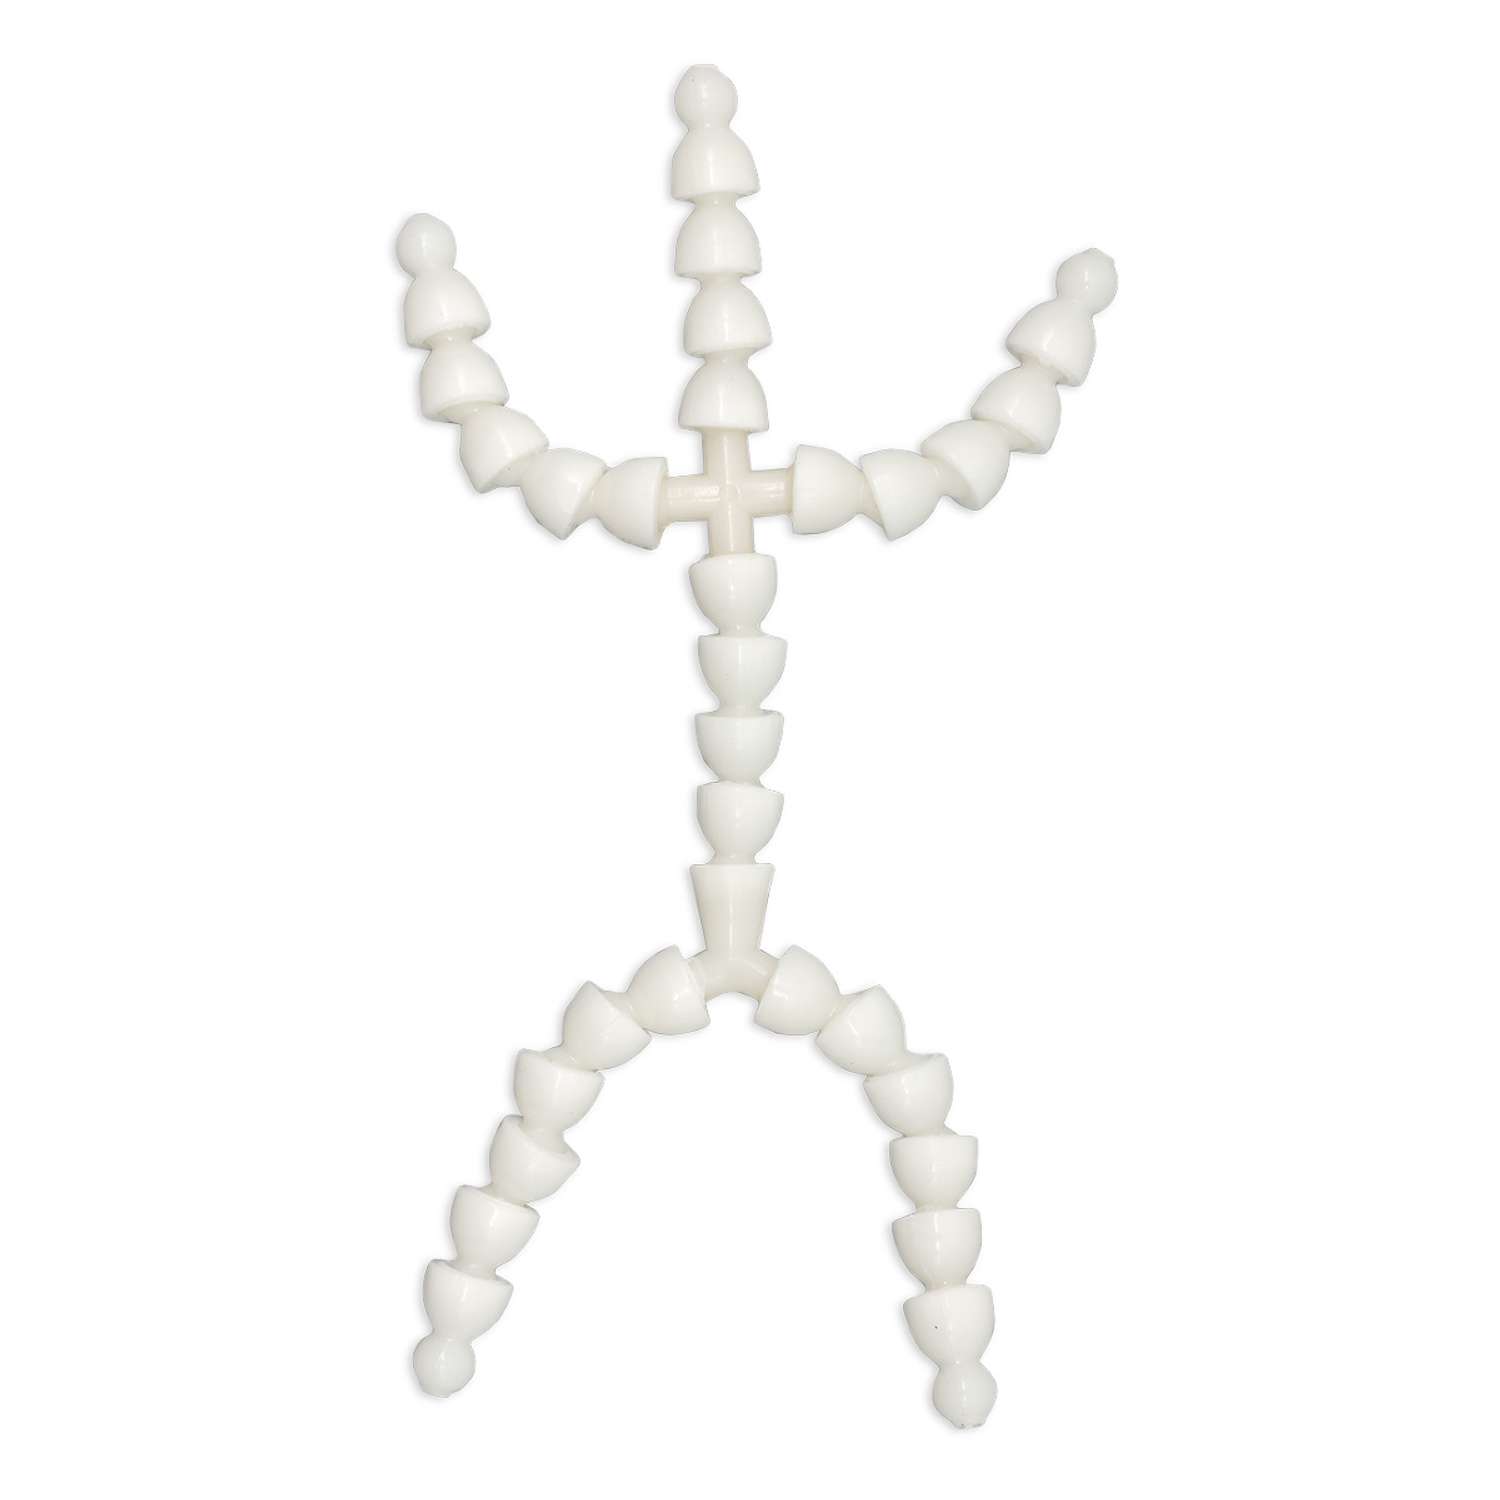 Скелет - каркас для игрушки Совушка готовый гибкий пластиковый Lock - line 19 см руки 6 см ноги 7 см - фото 1